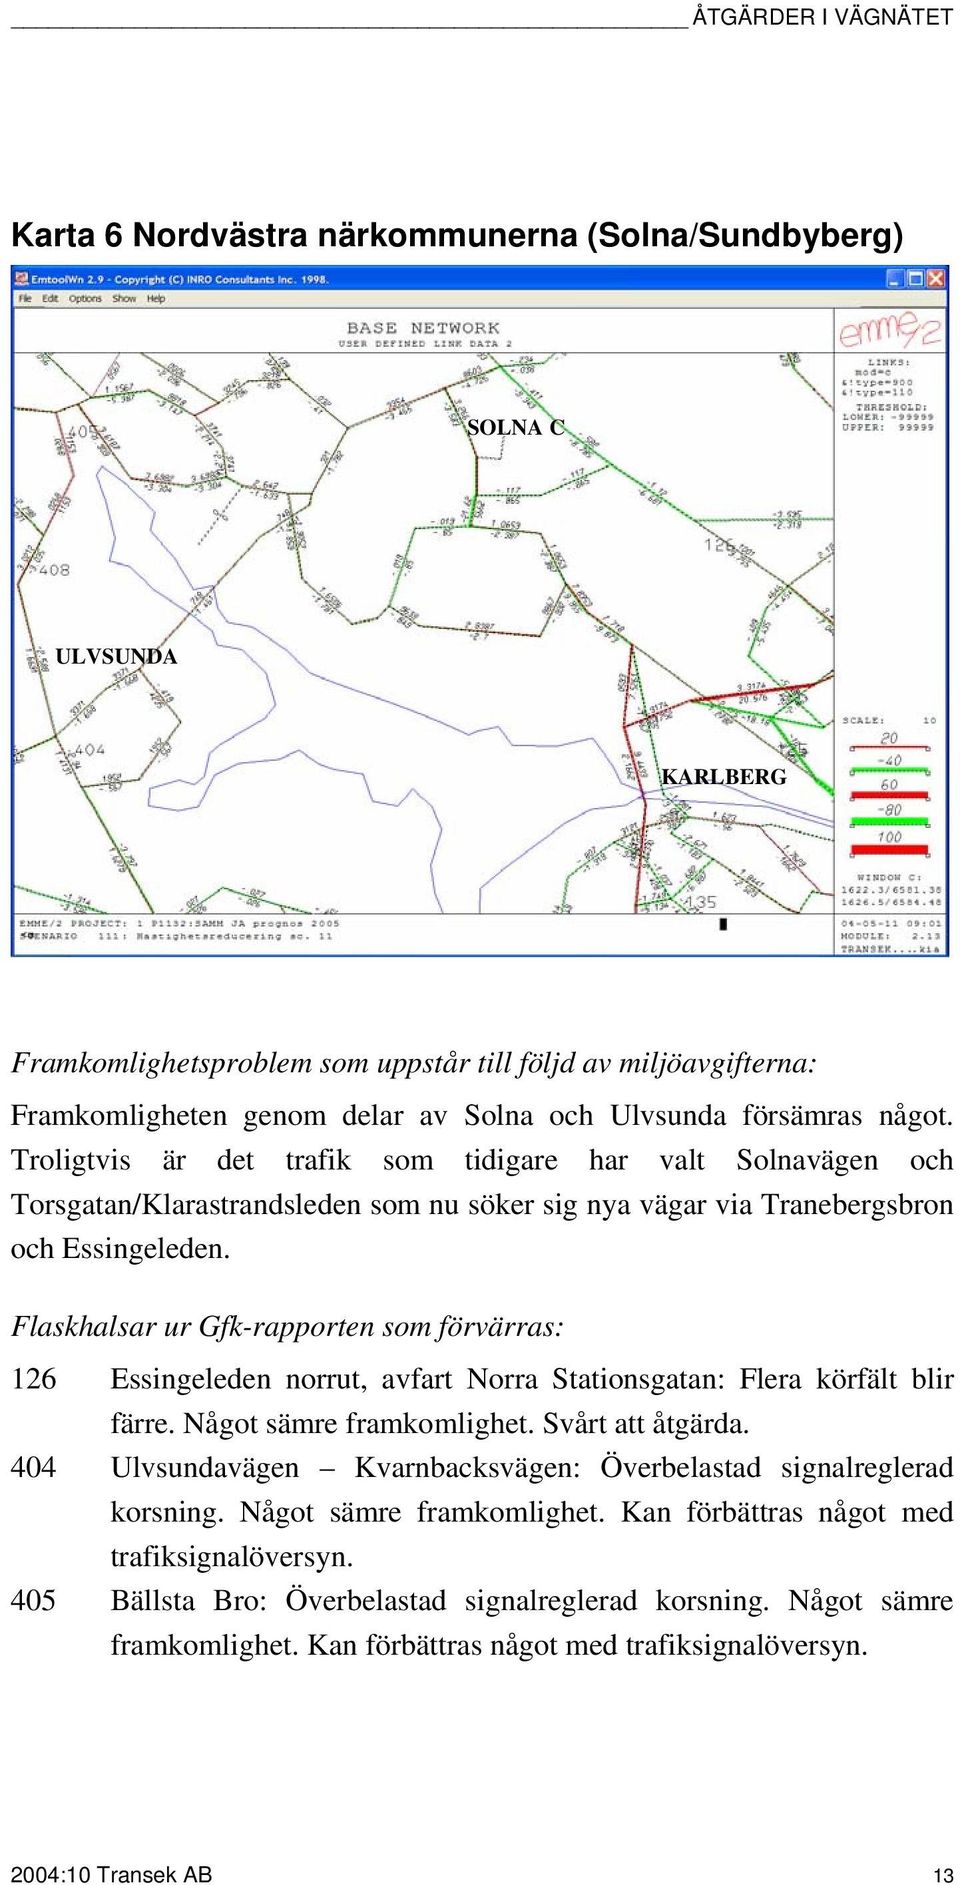 Flaskhalsar ur Gfk-rapporten som förvärras: 126 Essingeleden norrut, avfart Norra Stationsgatan: Flera körfält blir färre. Något sämre framkomlighet. Svårt att åtgärda.